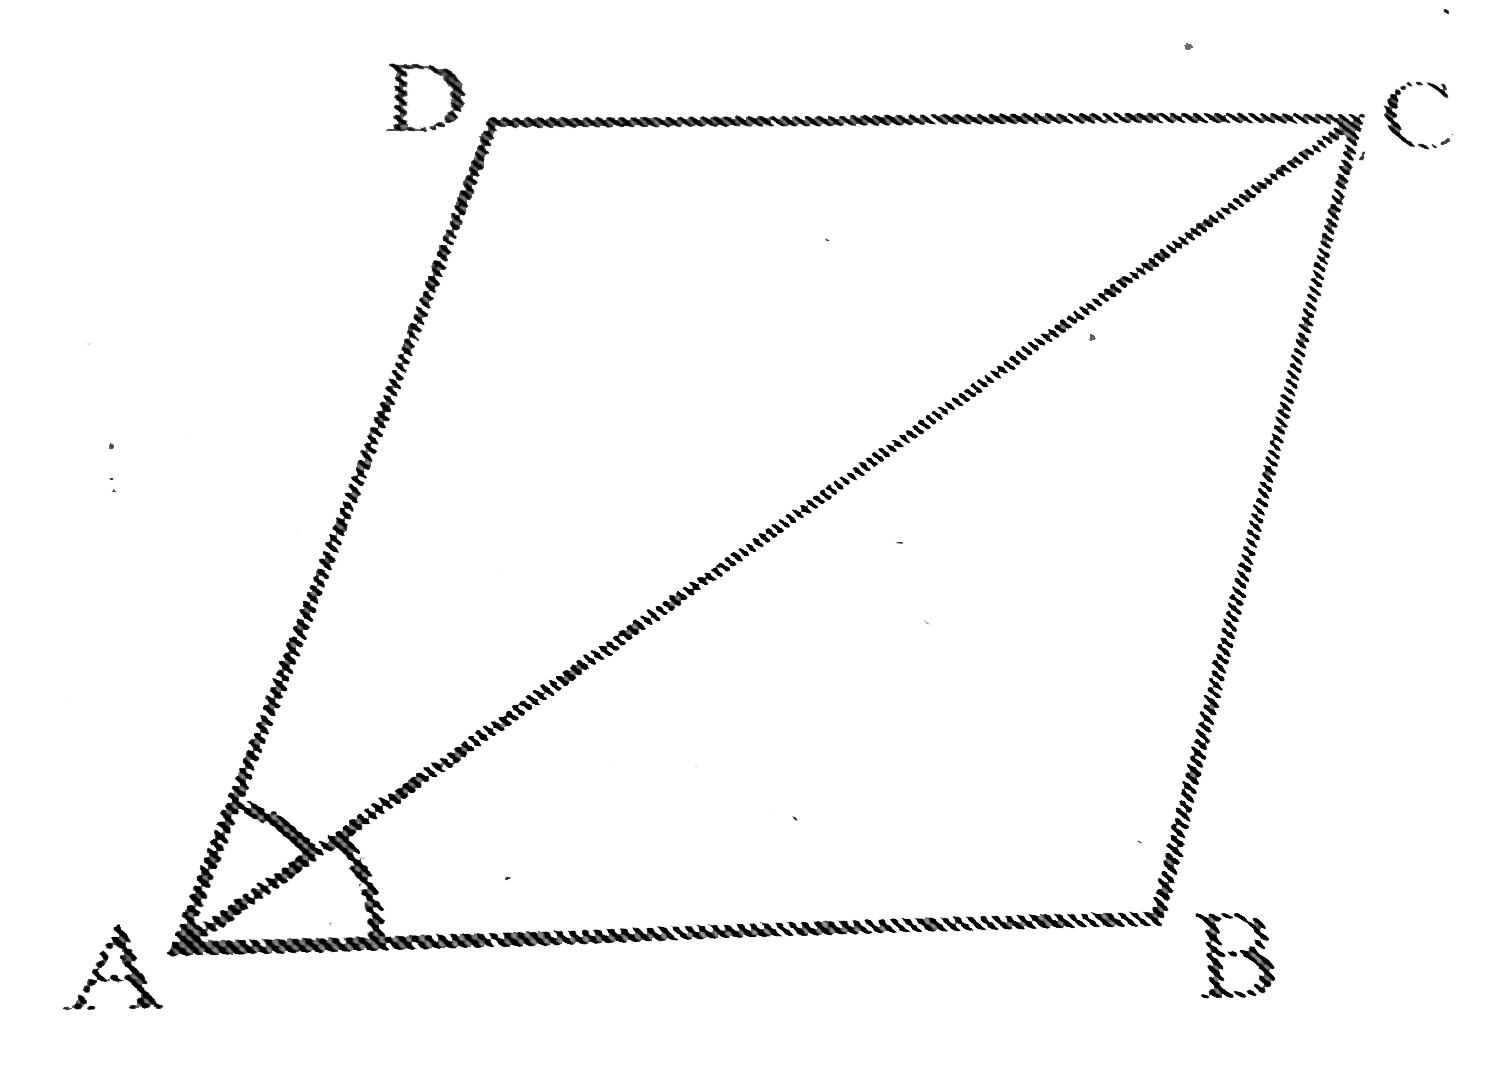 समांतर   चतुर्भुज  ABCD  का विकर्ण  AC कोण A को  समद्विभजित   करता  है। दर्शाइए  कि      यह  angle C को भी  समद्विभजित  करता है ।     (ii) ABCD  एक  समचतुर्भुज  है।